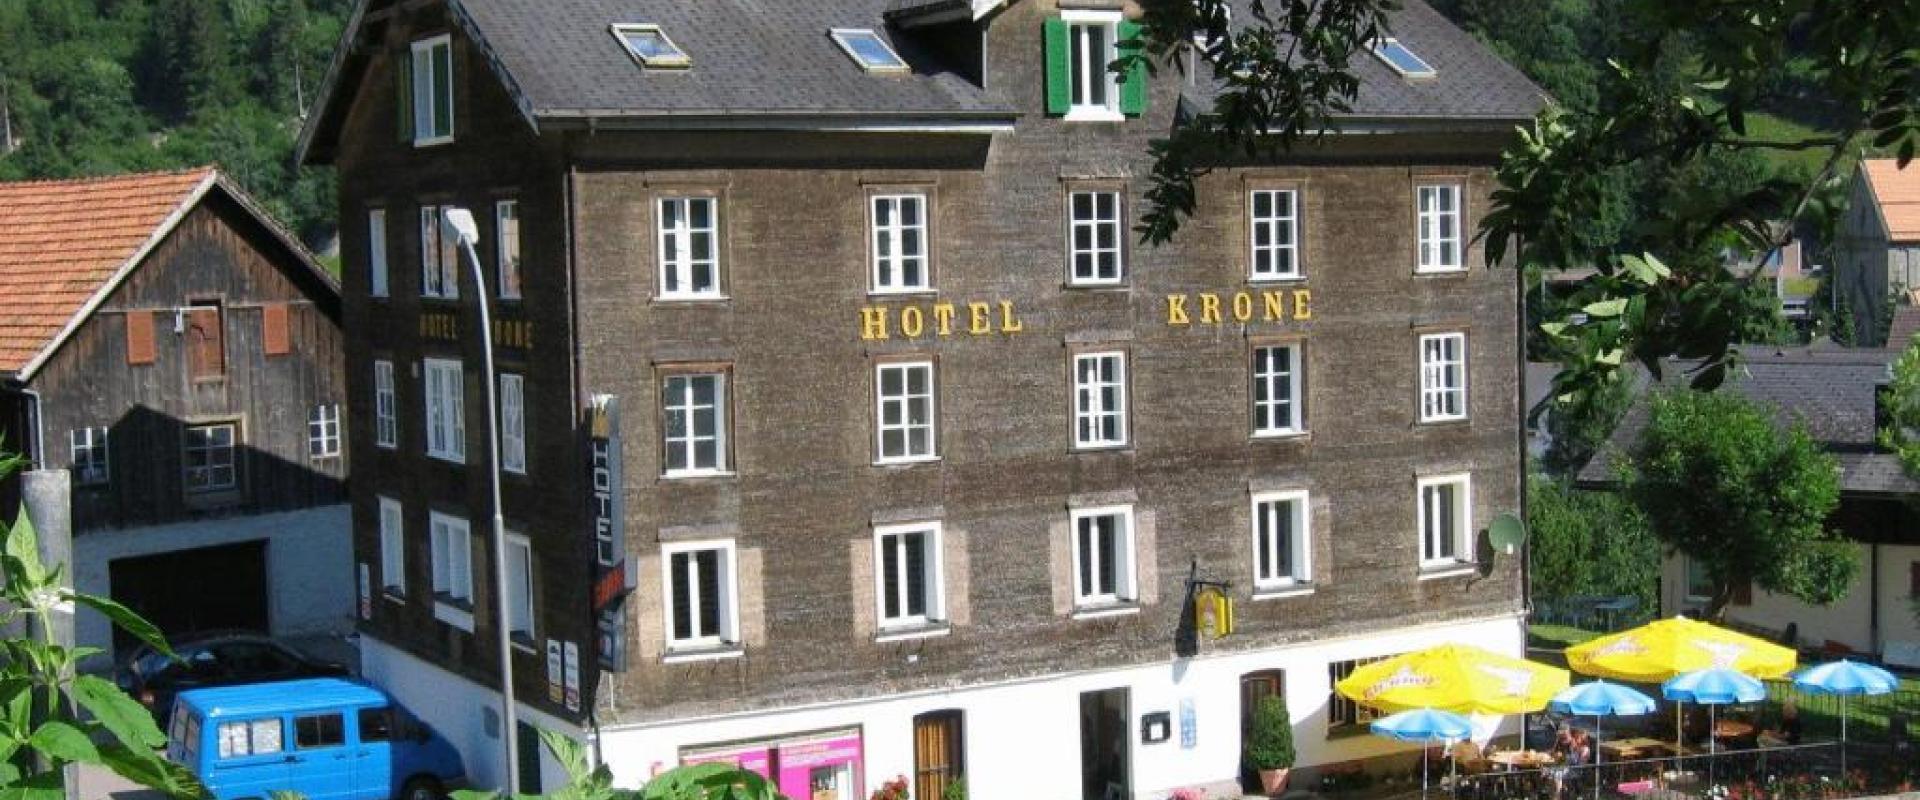 13866 Biker Hotel Krone in der Zentralschweiz.jpg